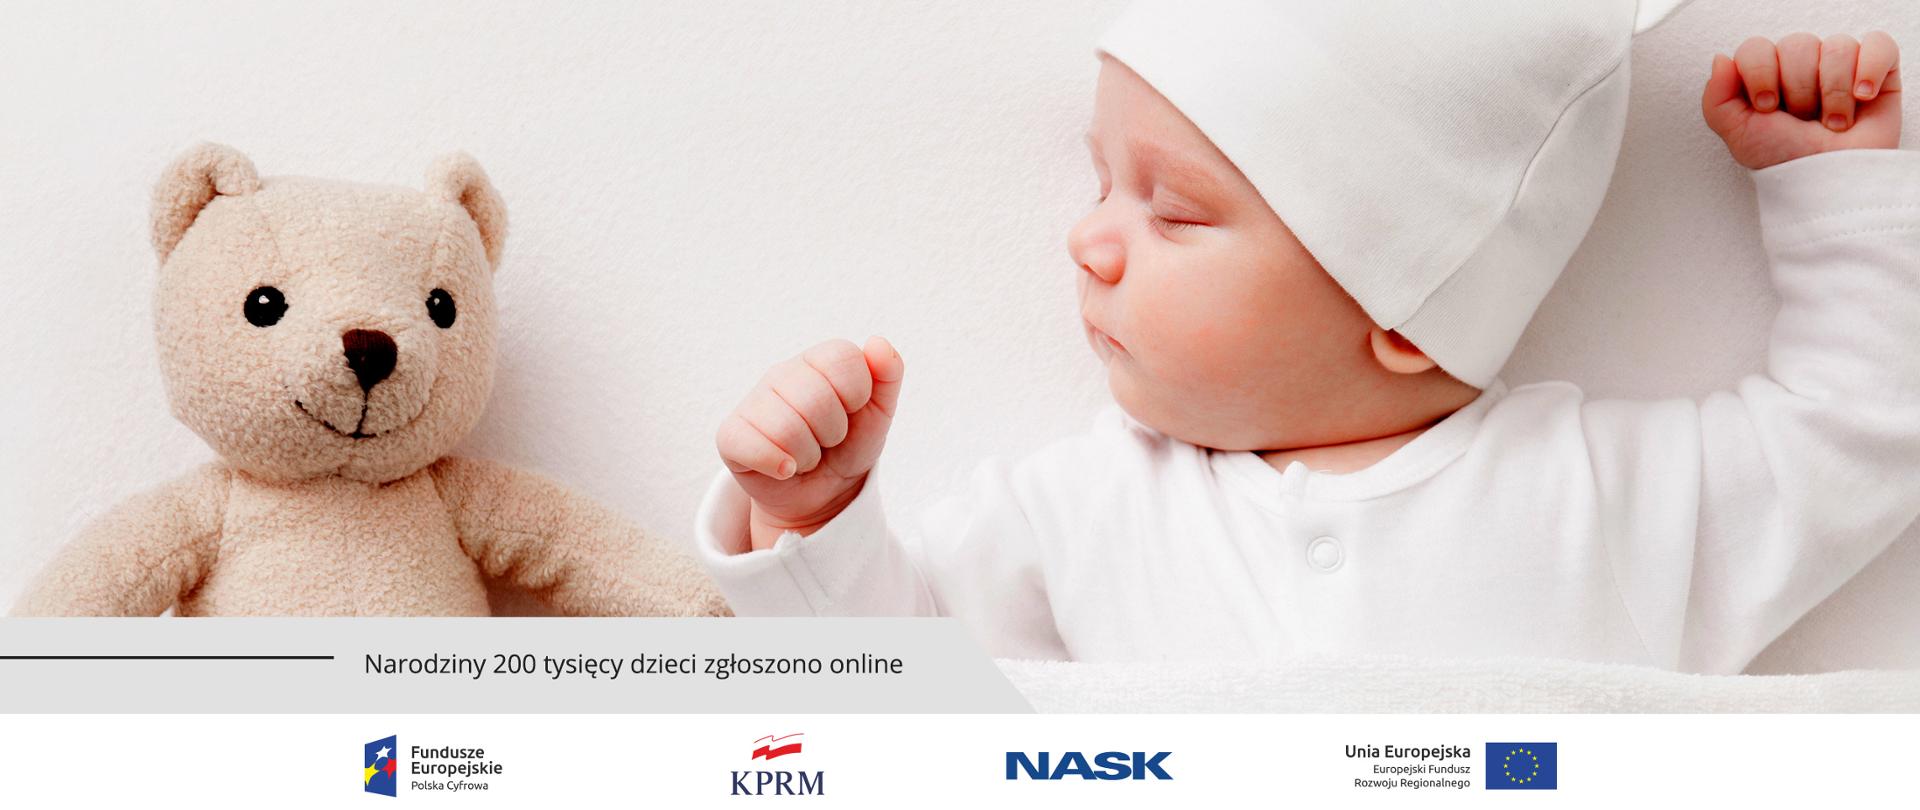 Śpiące, ubrane na biało niemowlę. Z jego prawej strony - maskotka miś. Na dole tekst: Narodziny 200 tysięcy dzieci zgłoszono online.